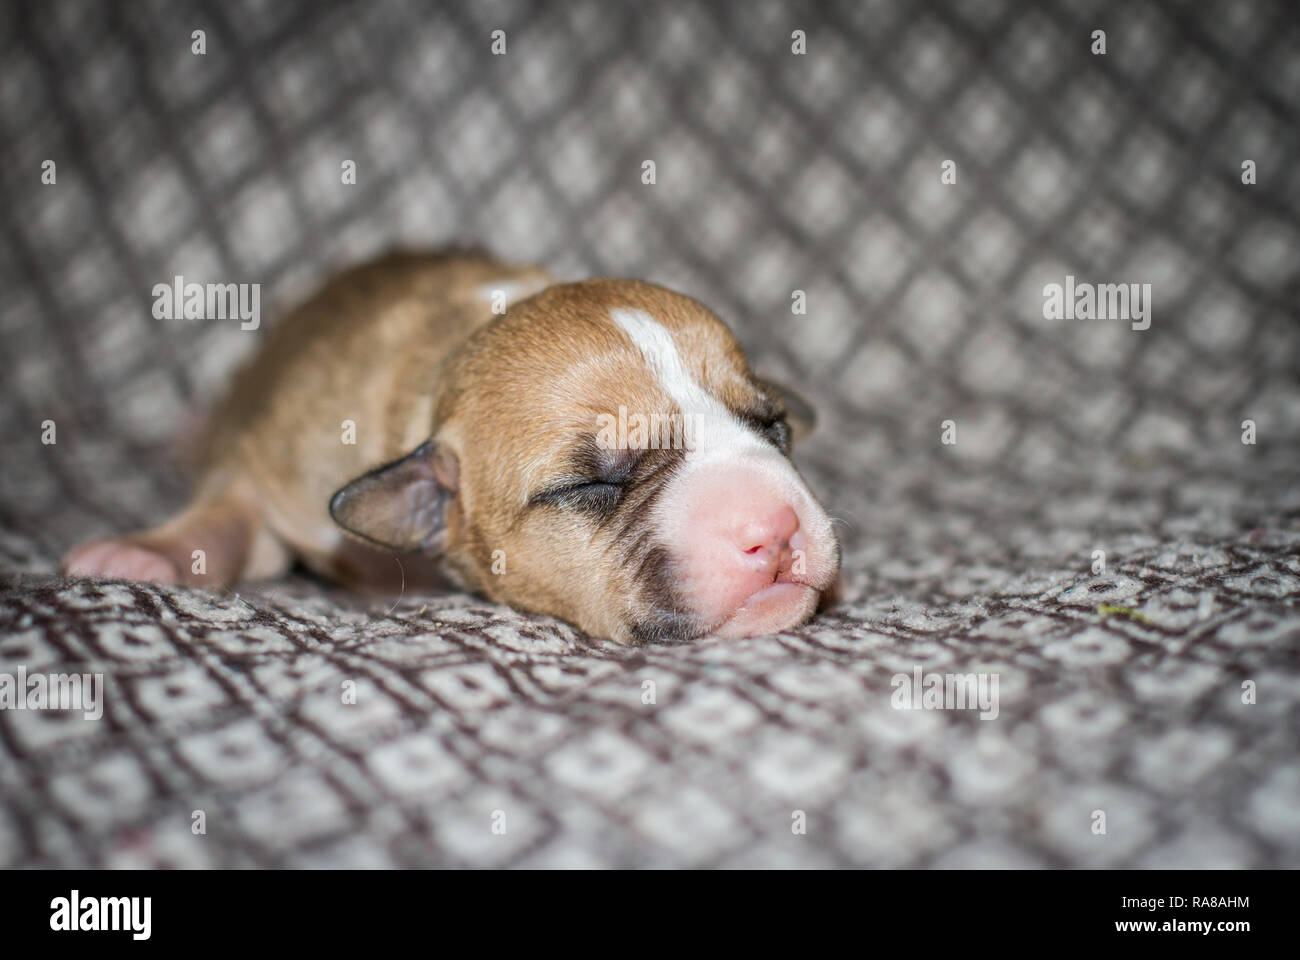 newborn pitbulls